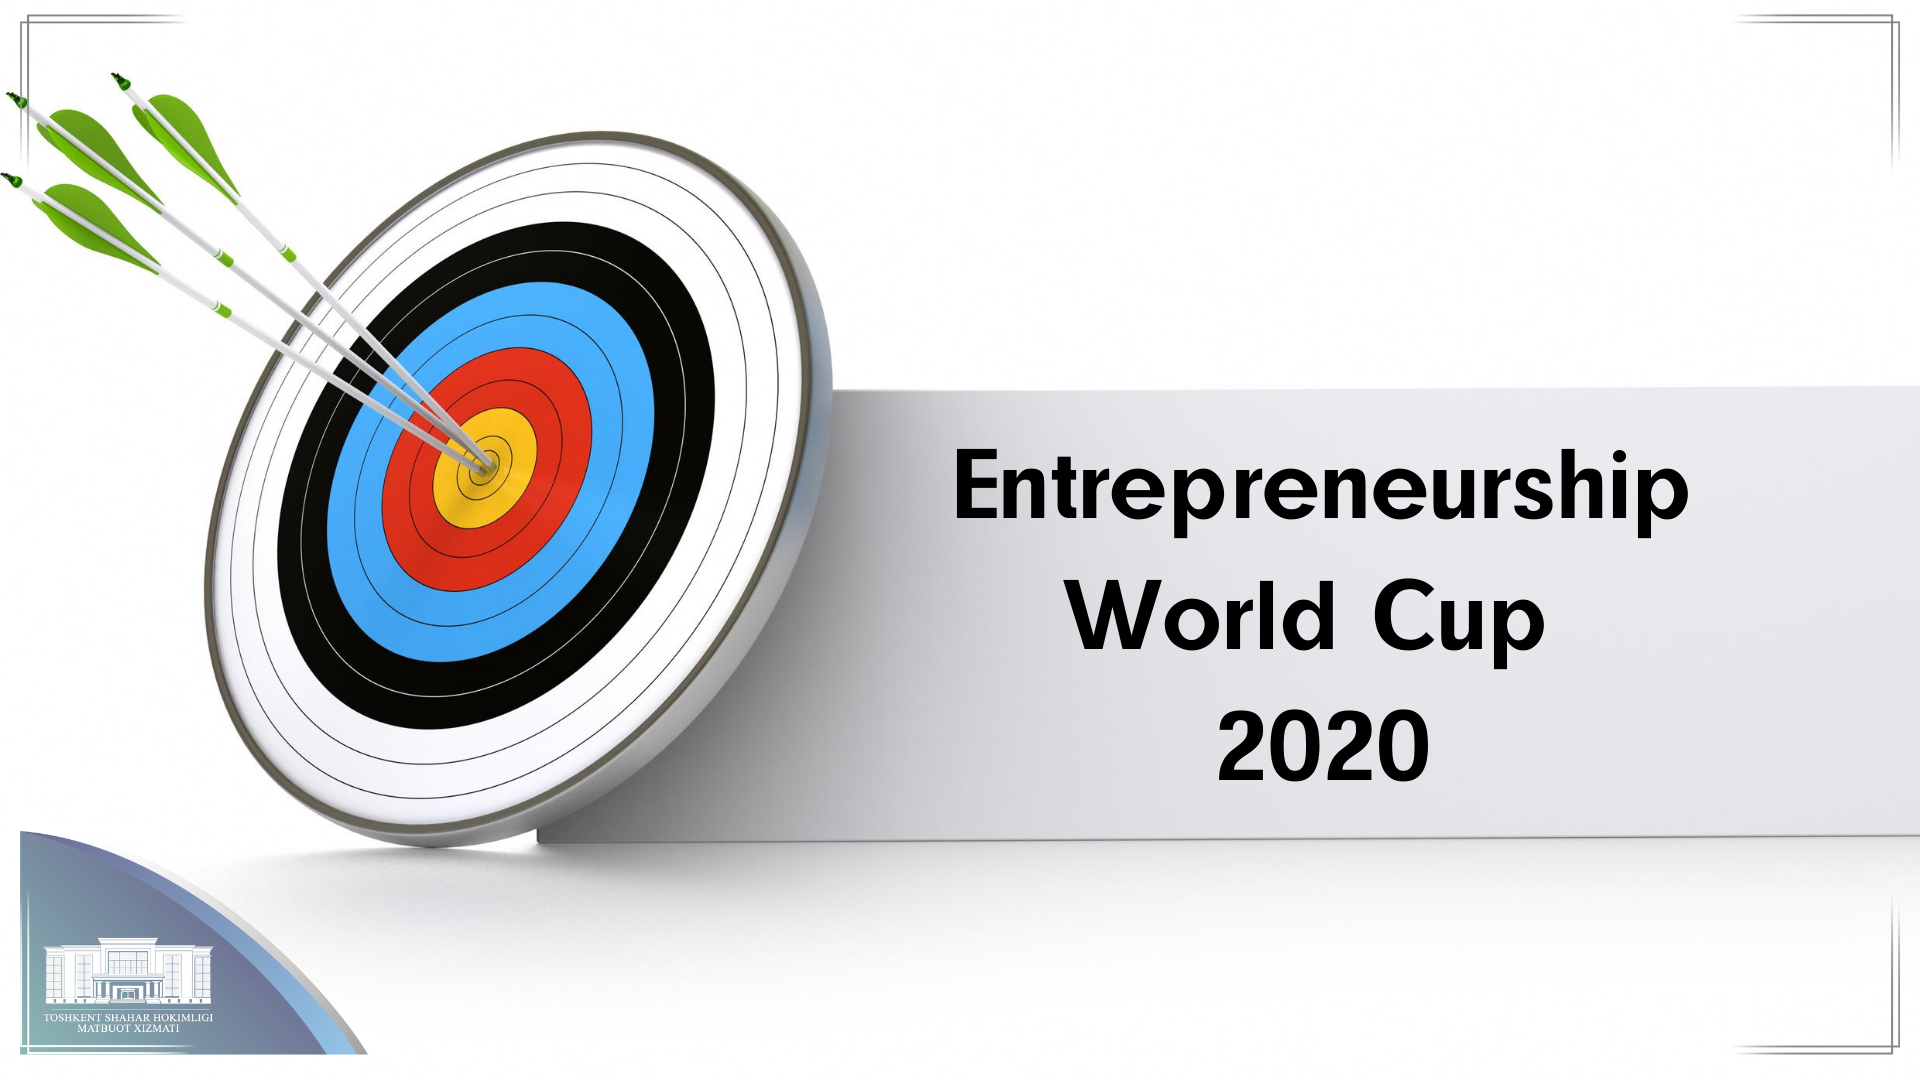 Два узбекистанских проекта вышли в мировой финал конкурса Entrepreneurship World Cup